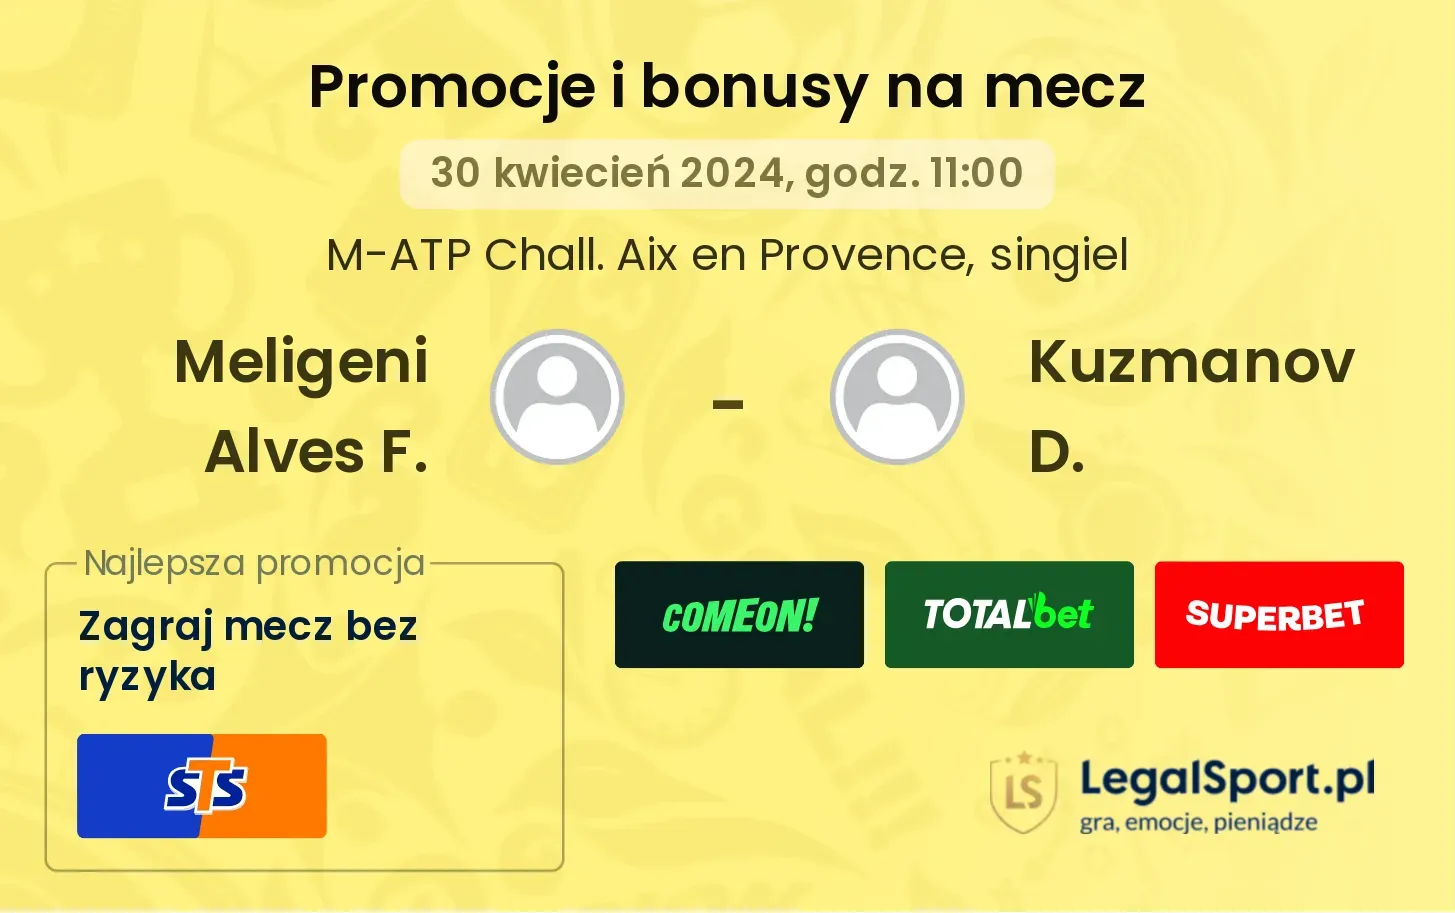 Meligeni Alves F. - Kuzmanov D. promocje bonusy na mecz